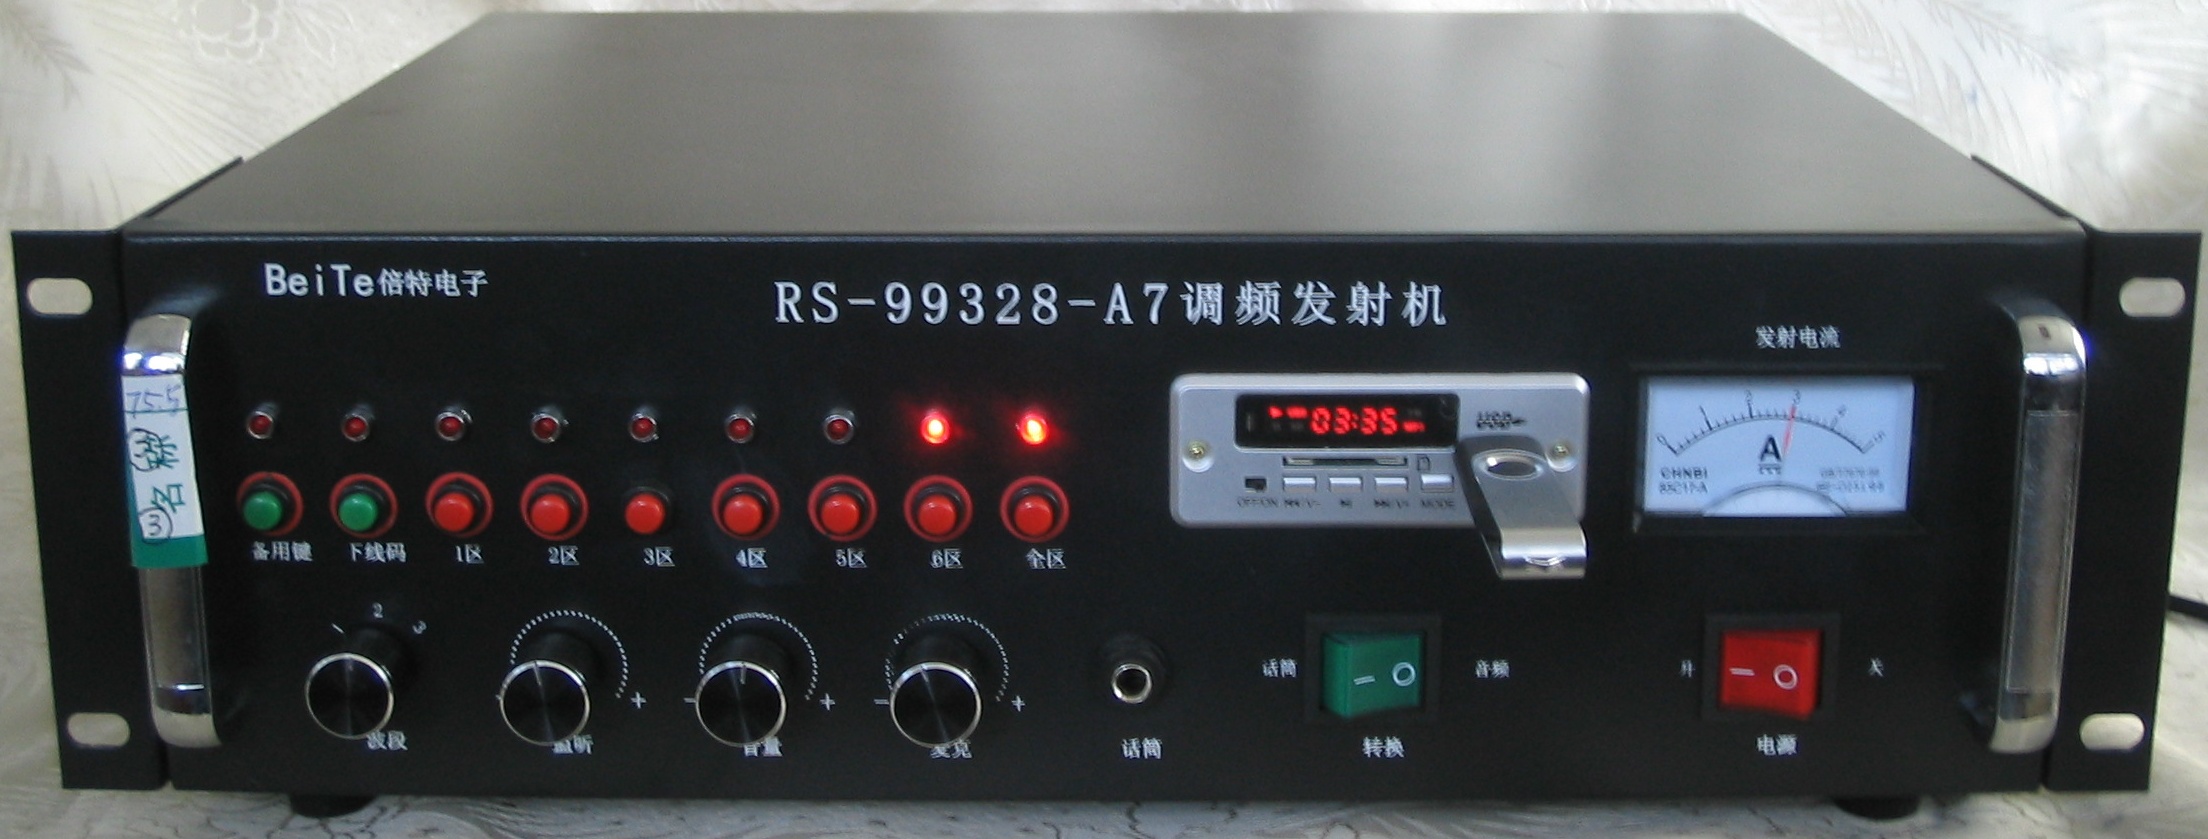 调频发射机 农村无线广播 校园无线广播 RS99328-A7-16倍特牌 发射机9